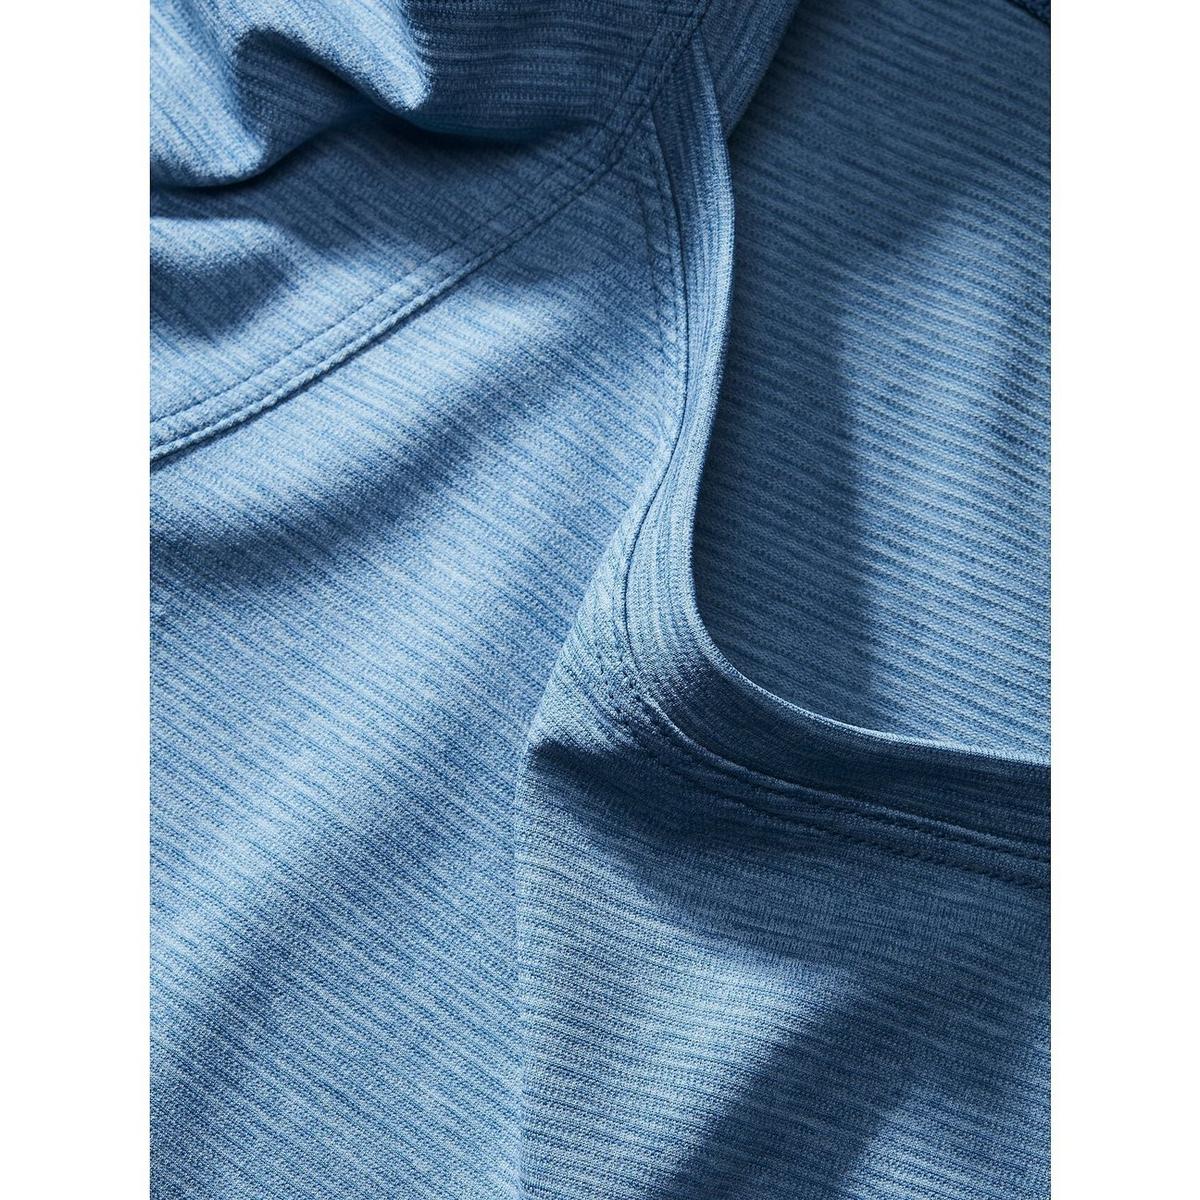 Arcteryx Women's Taema SS T Shirt - Blue